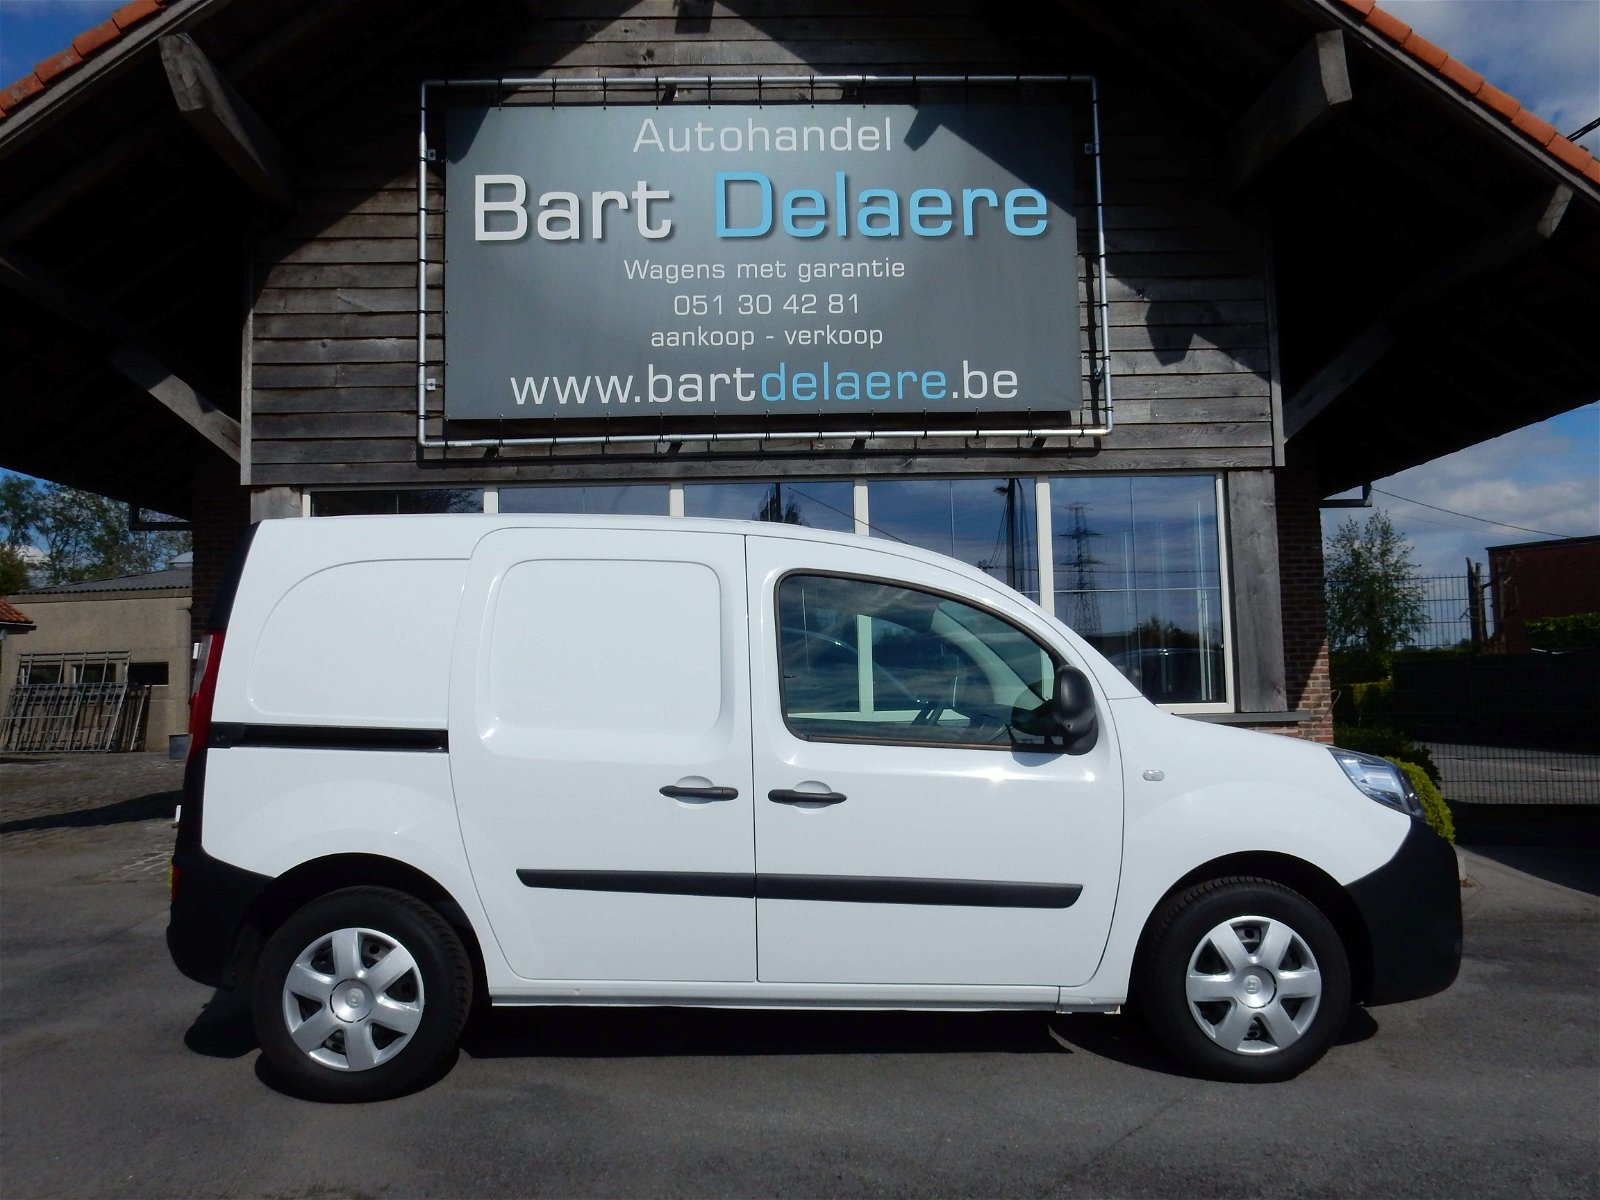 Bart De Laere Renault Kangoo 1.5Dci 95pk euro6 prachtstaat! (8850Netto+Btw/Tva)